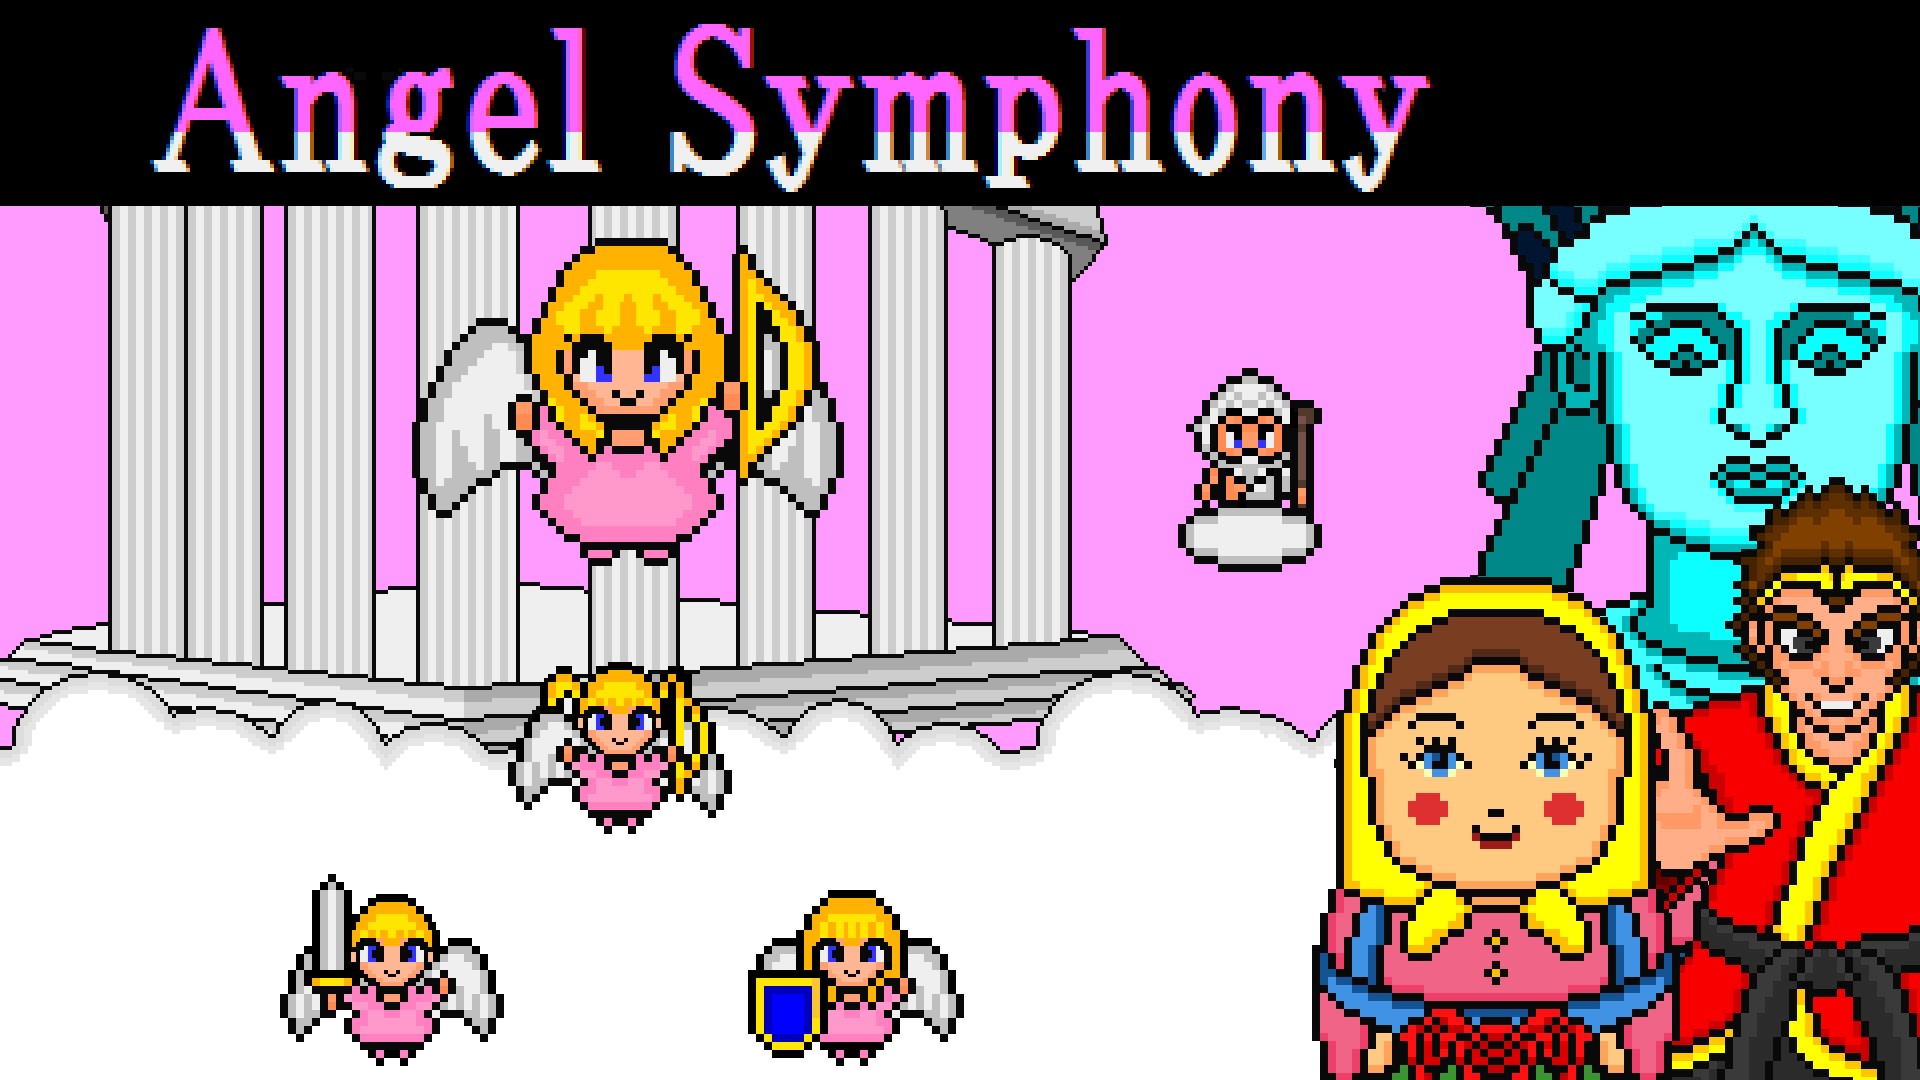 La symphonie des anges 1